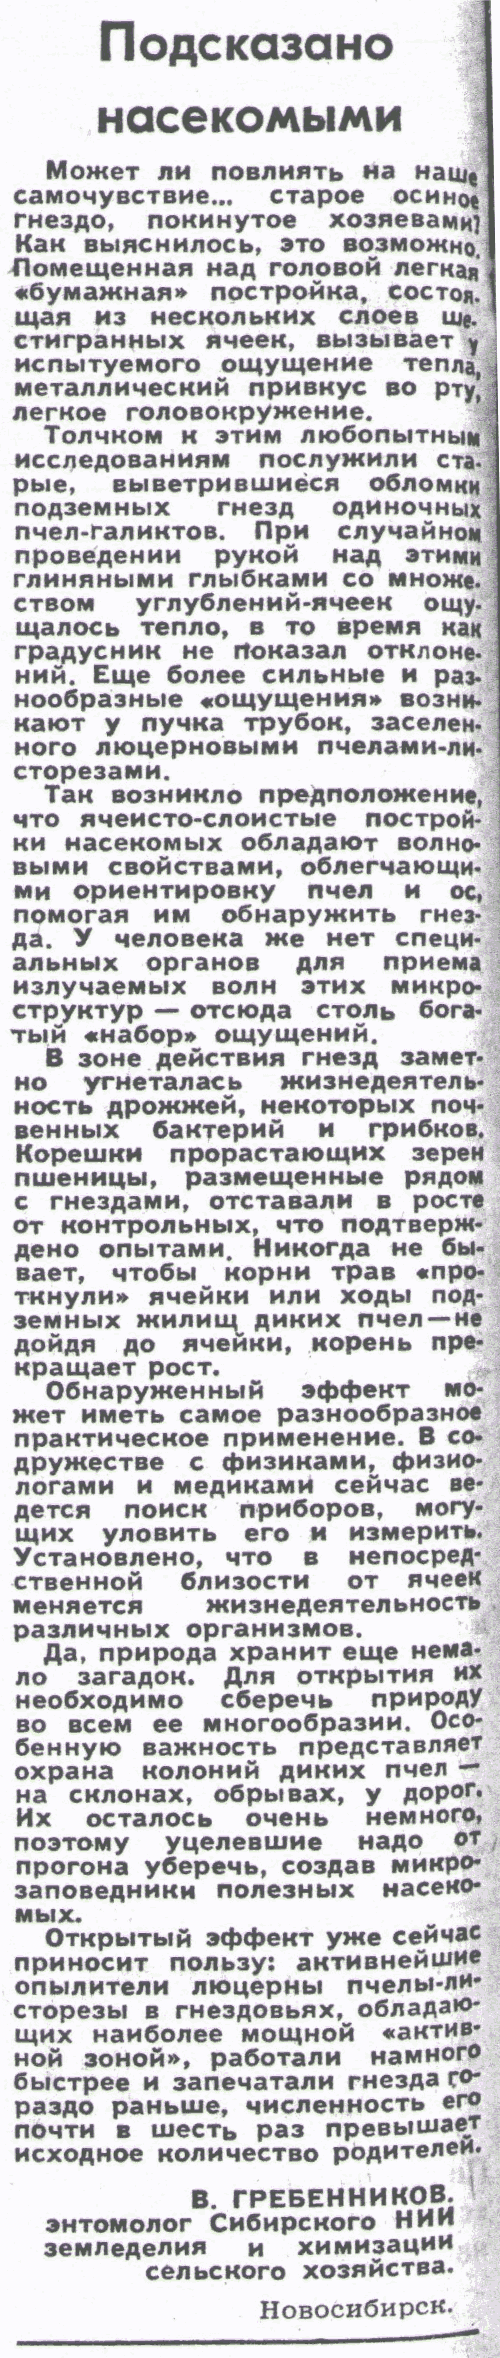 Подсказано насекомыми. В.С. Гребенников. Сельская жизнь, 19.07.1984.